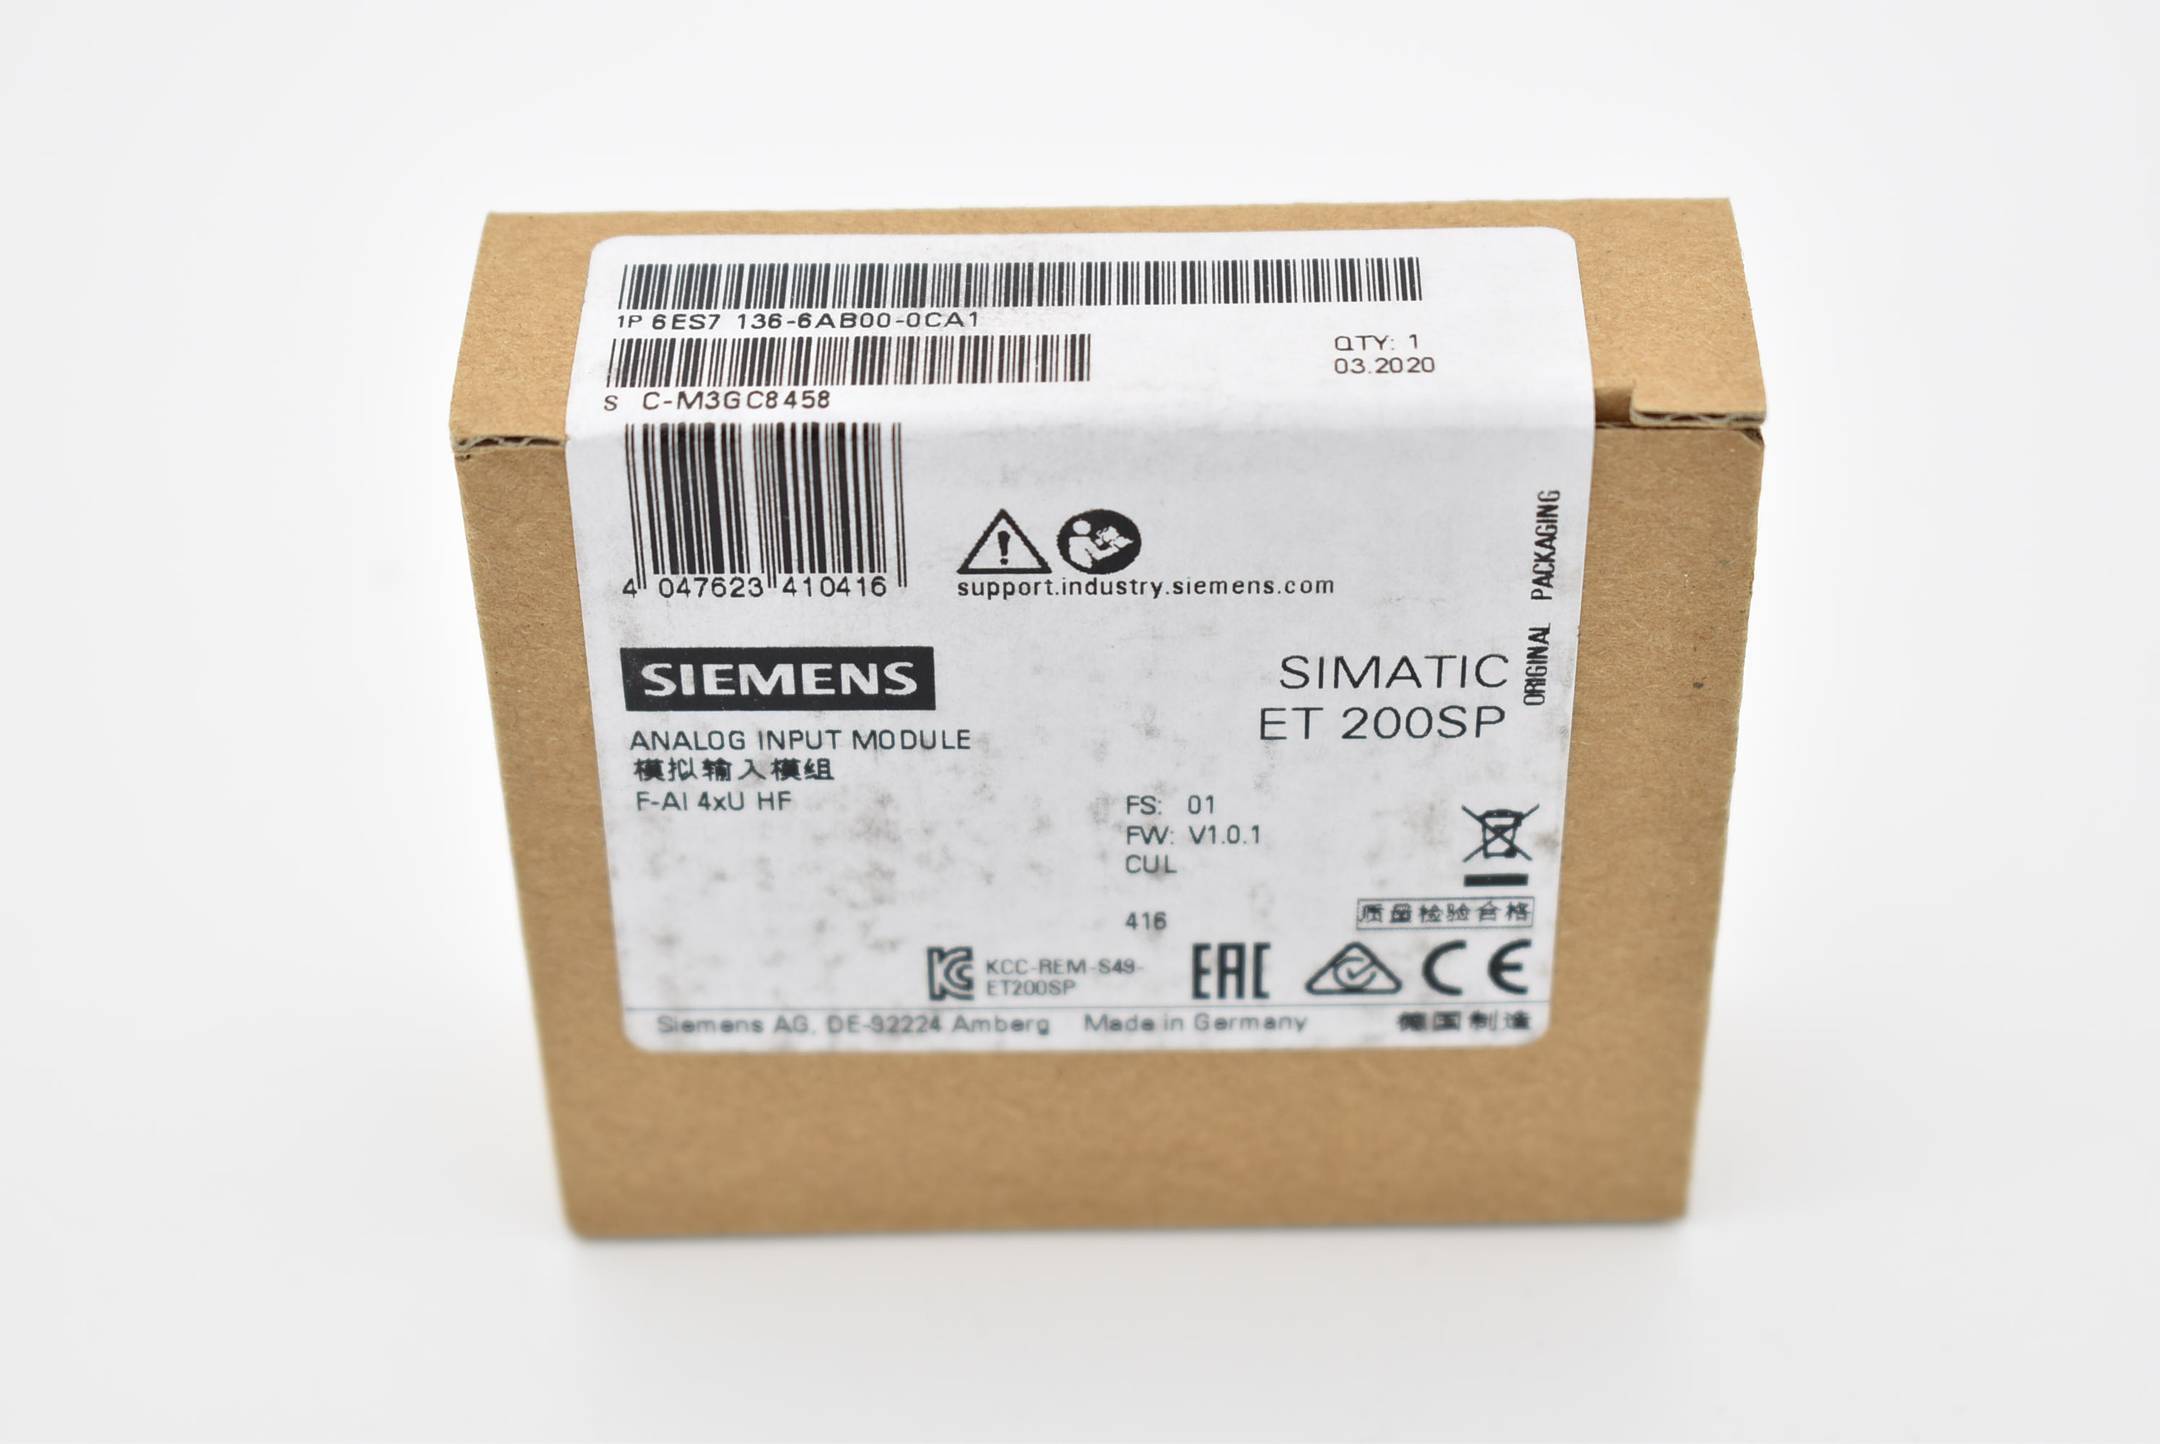 Siemens simatic ET200SP 6ES7 136-6AB00-0CA1 ( 6ES7136-6AB00-0CA1 ) 